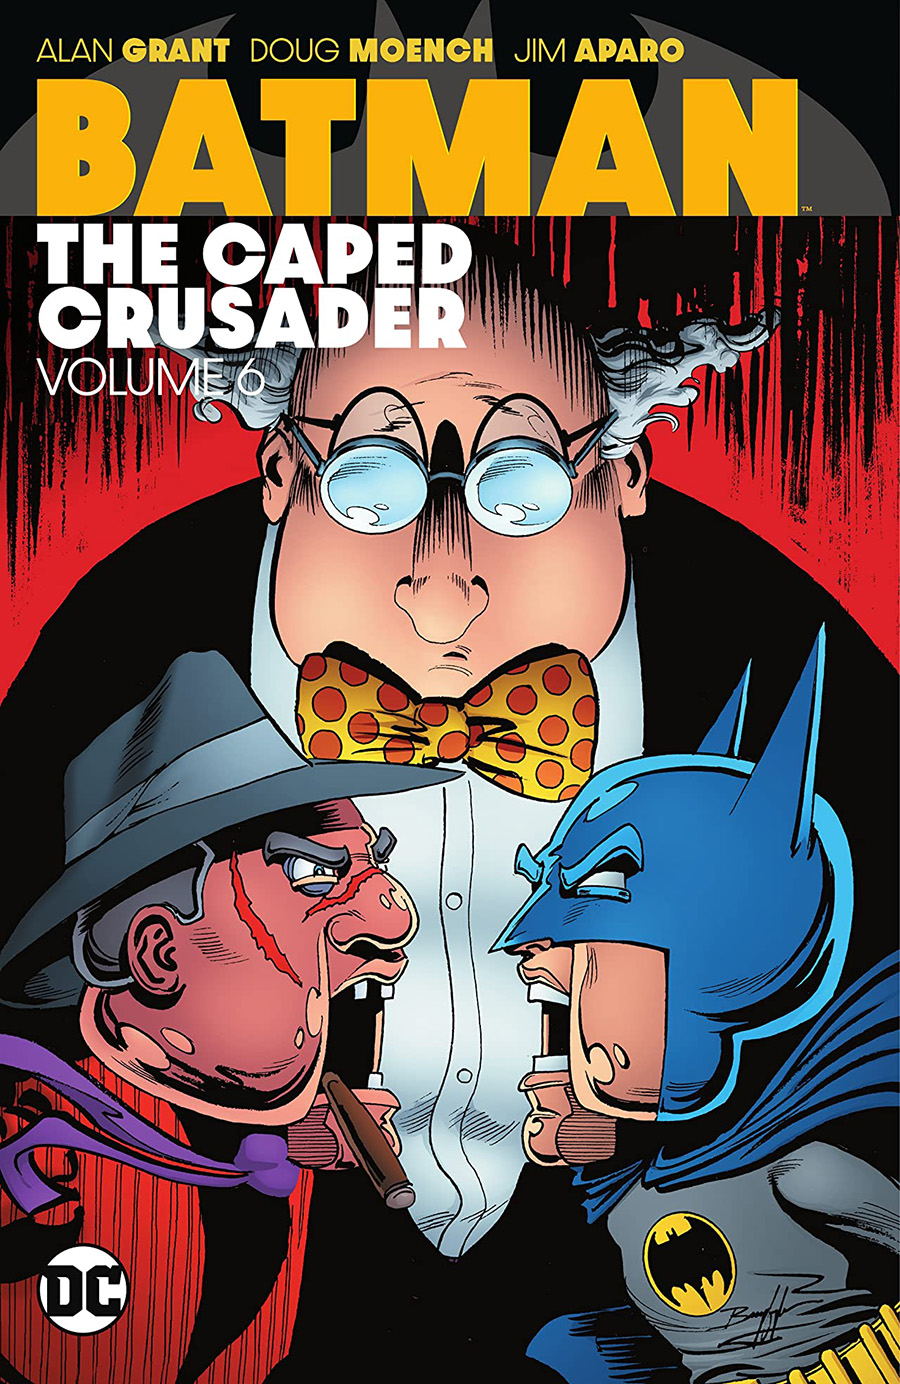 Batman The Caped Crusader Vol 6 TP